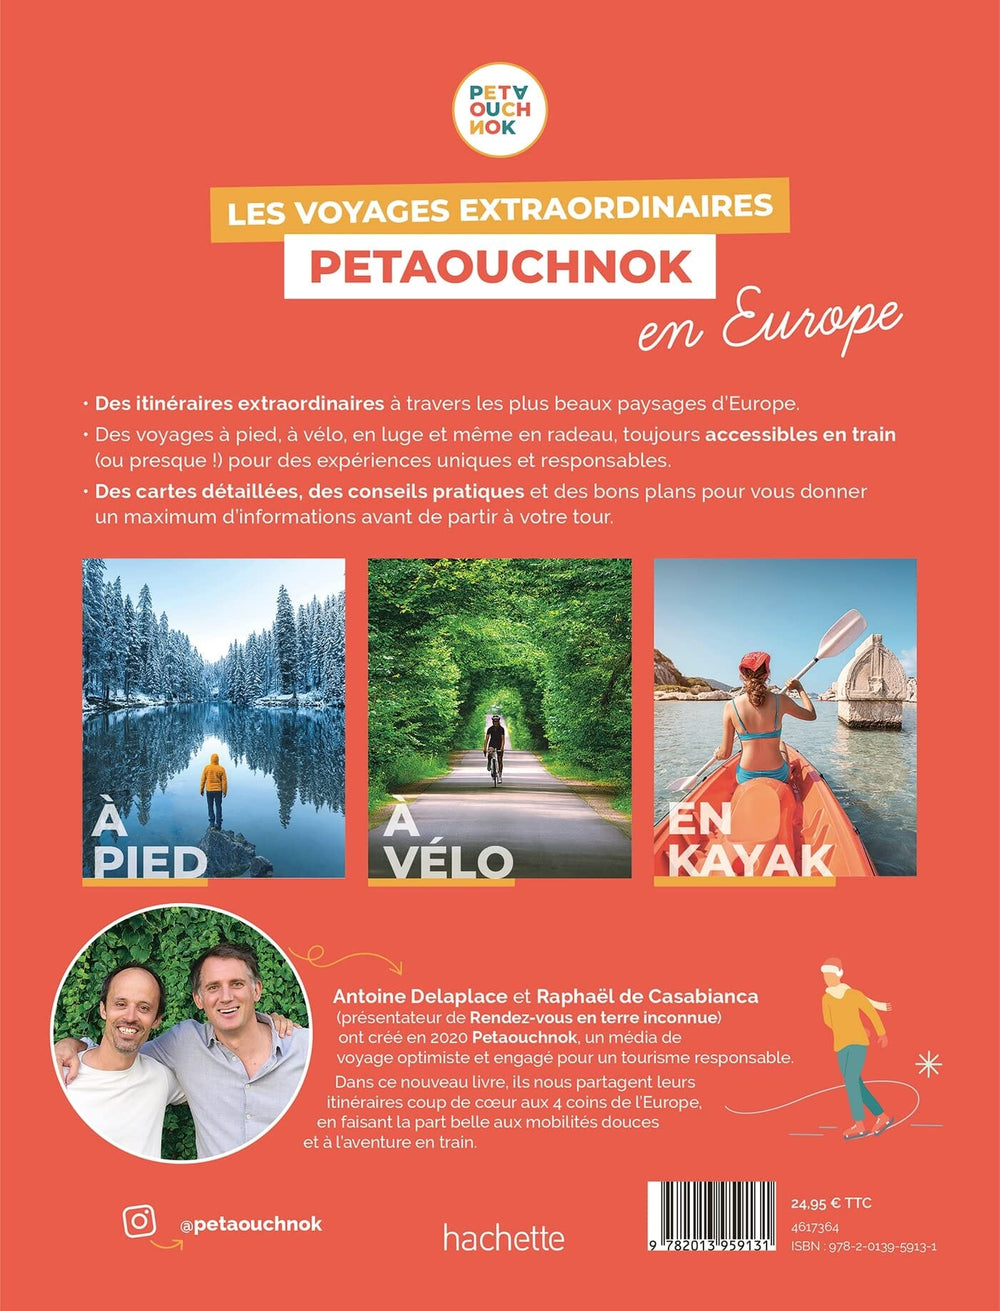 Beau livre - Les voyages extraordinaires de Petaouchnok en Europe : Explorez l'Europe à pied, à vélo, en kayak | Hachette beau livre Hachette 